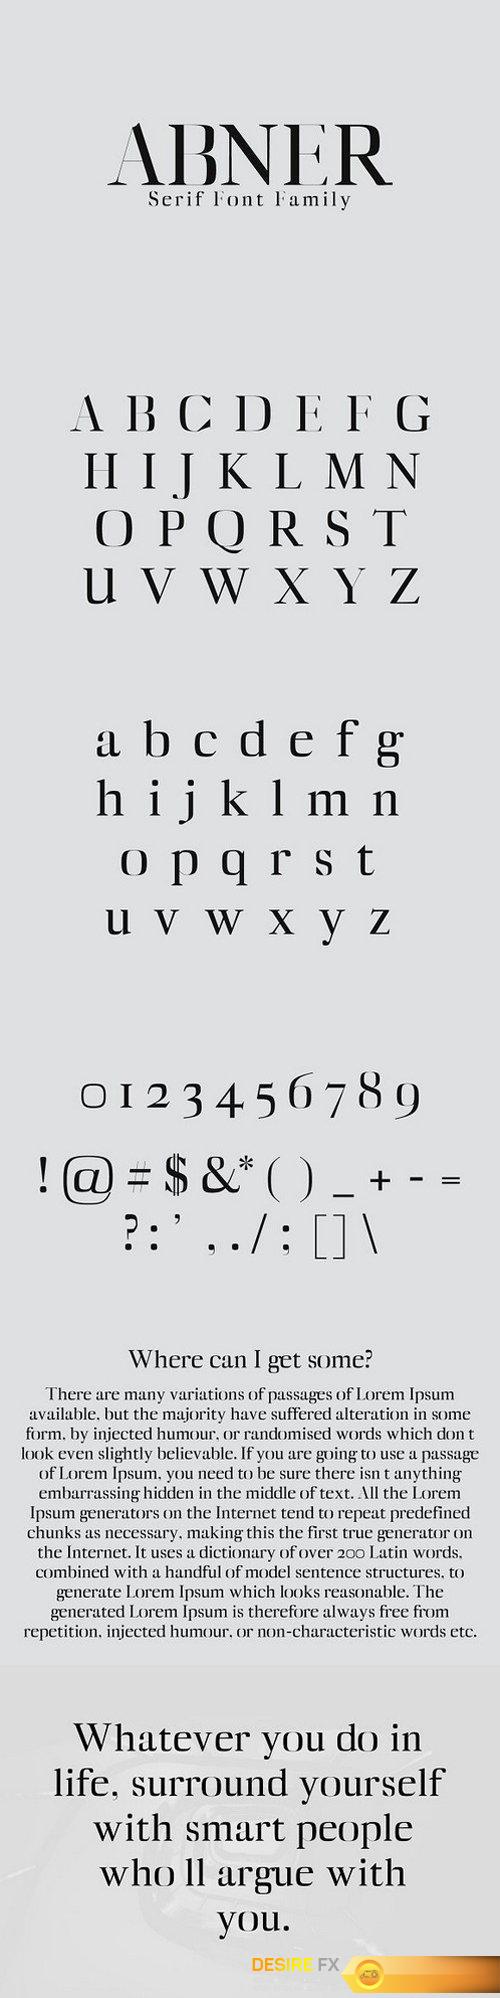 CM - Abner Serif Font Family 1408311